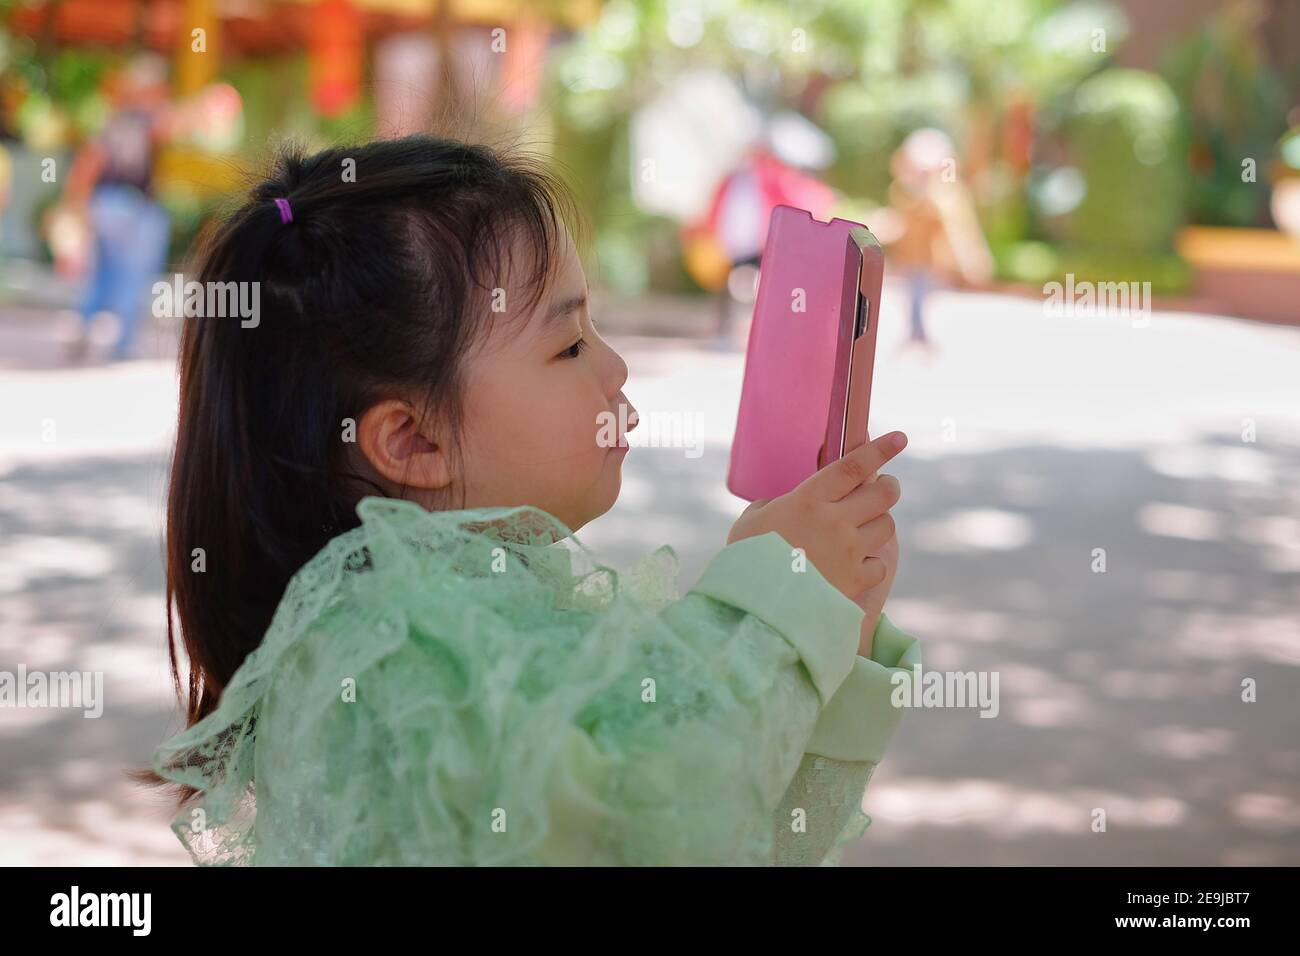 Una ragazza asiatica carina sta tenendo uno smartphone rosa, cercando di scattare una foto in vacanza. Foto Stock